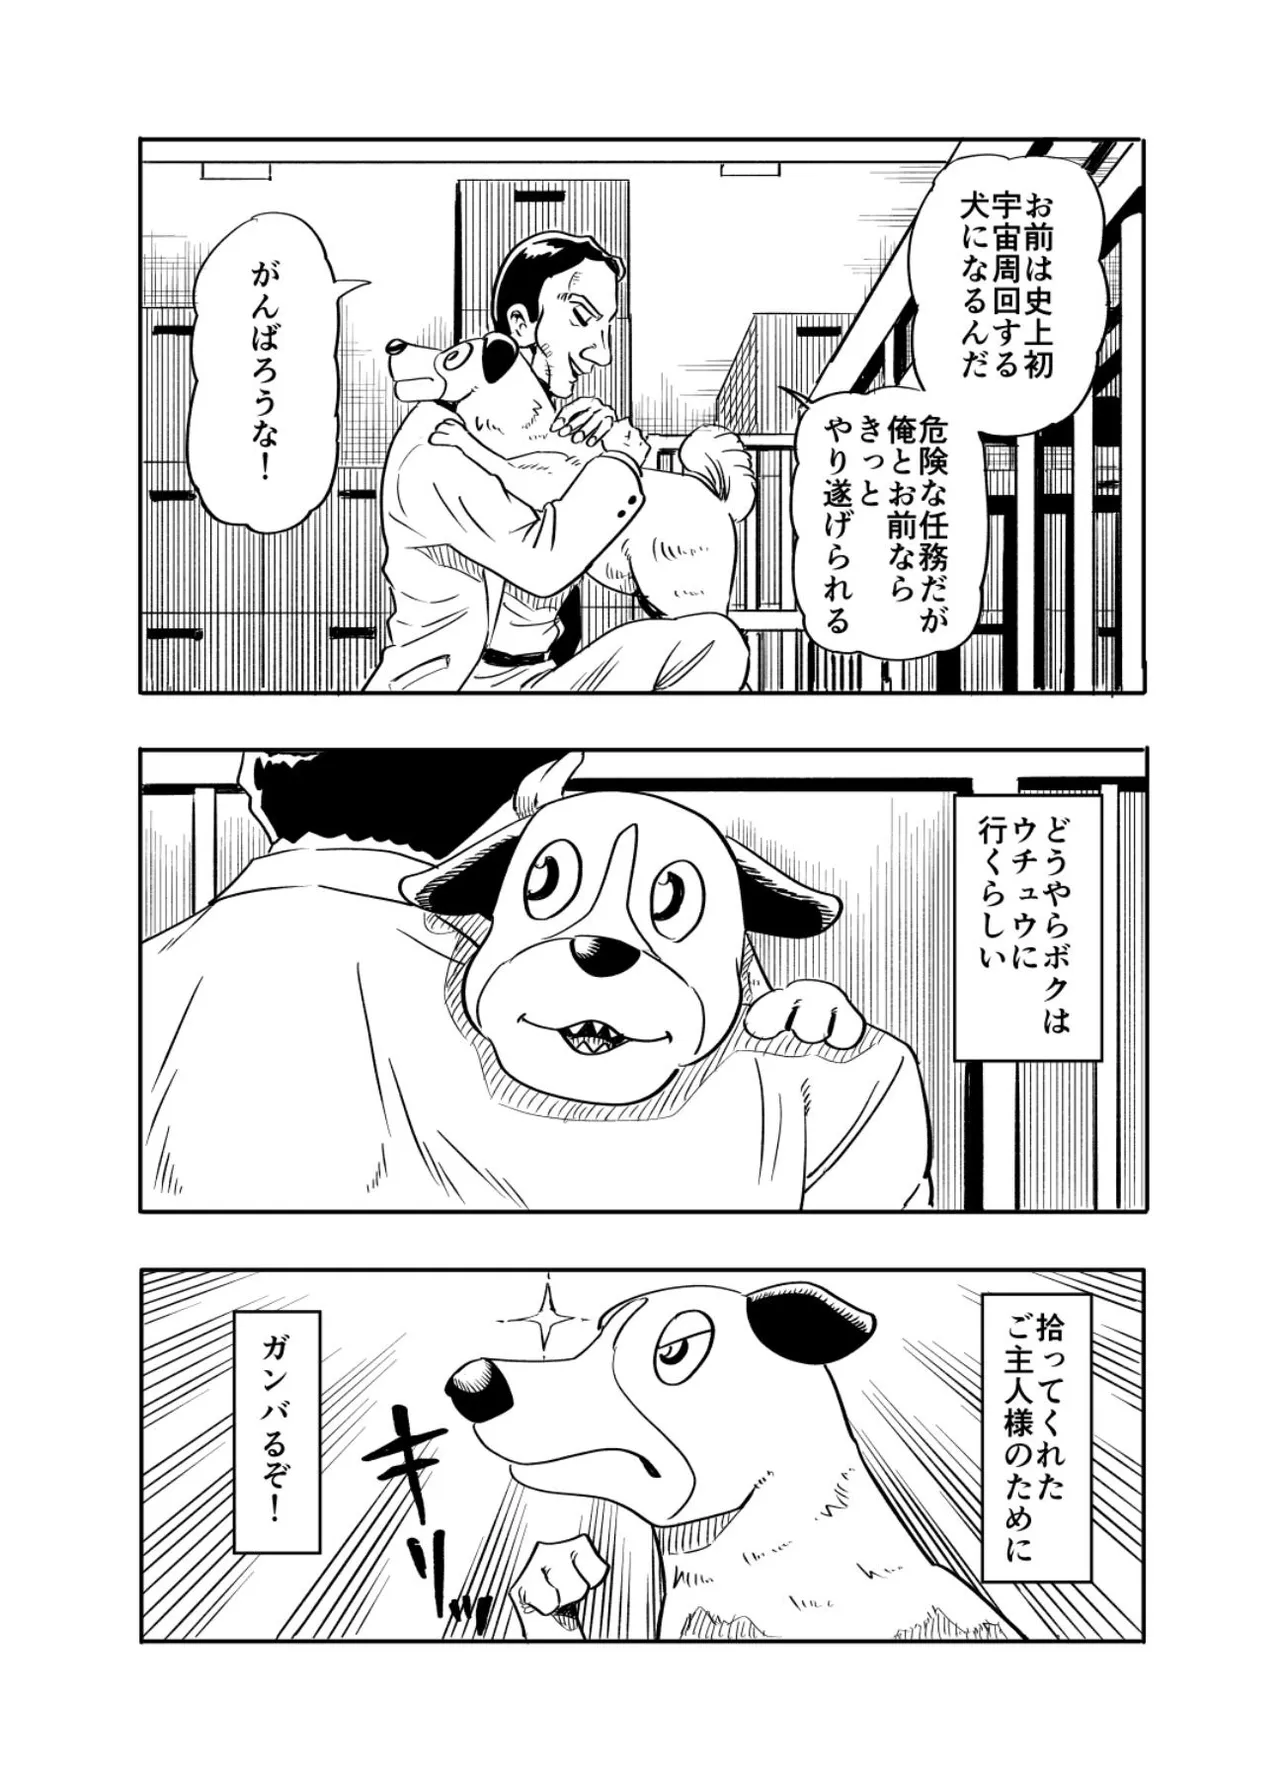 『ライカ犬が幸せになる話』(3／36)